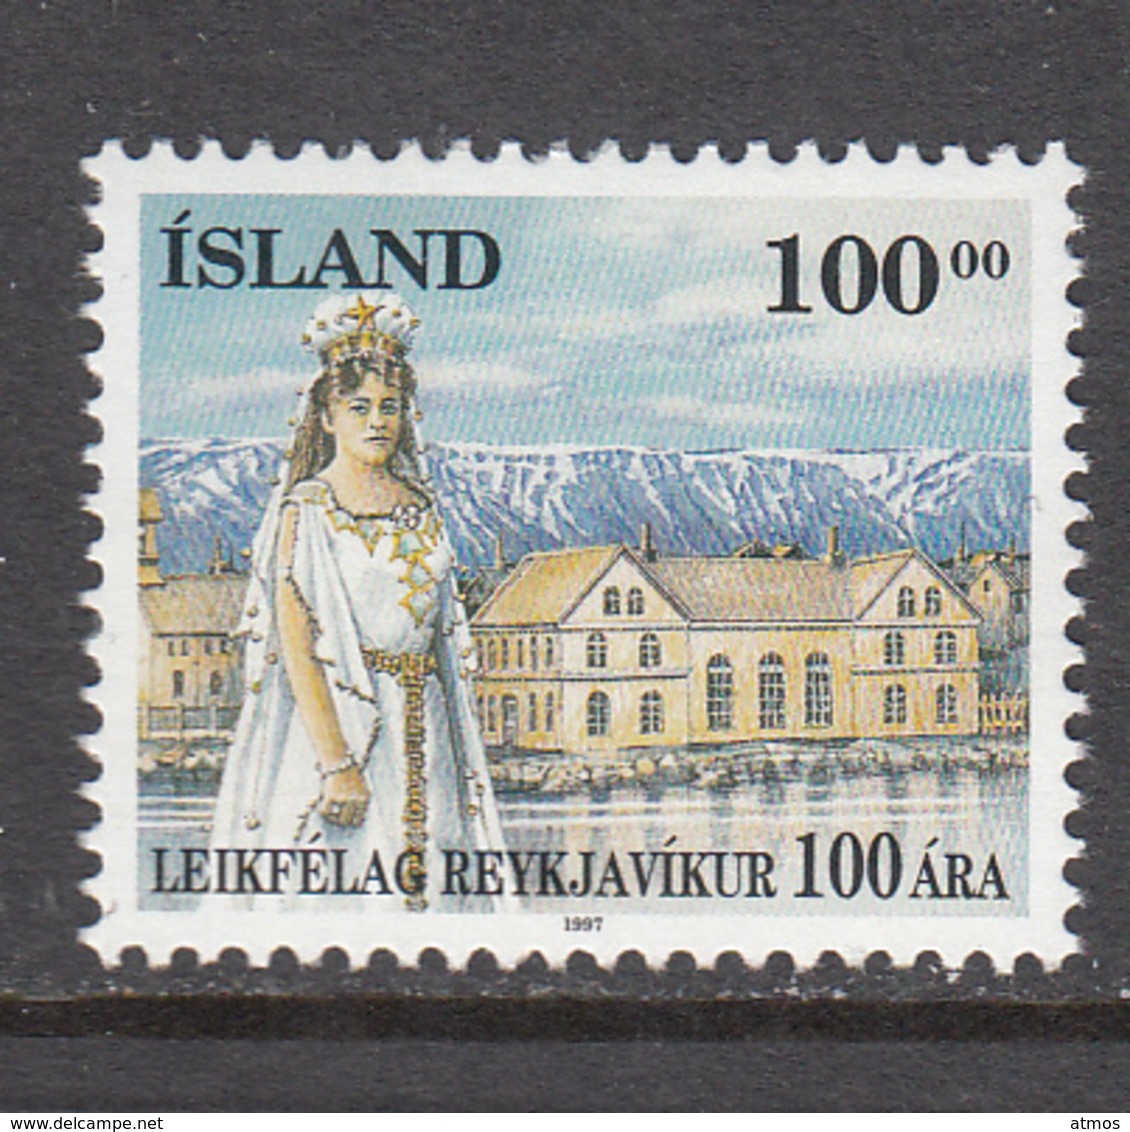 Iceland MNH Michel Nr 875 From 1997 / Catw 3.00 EUR - Ungebraucht